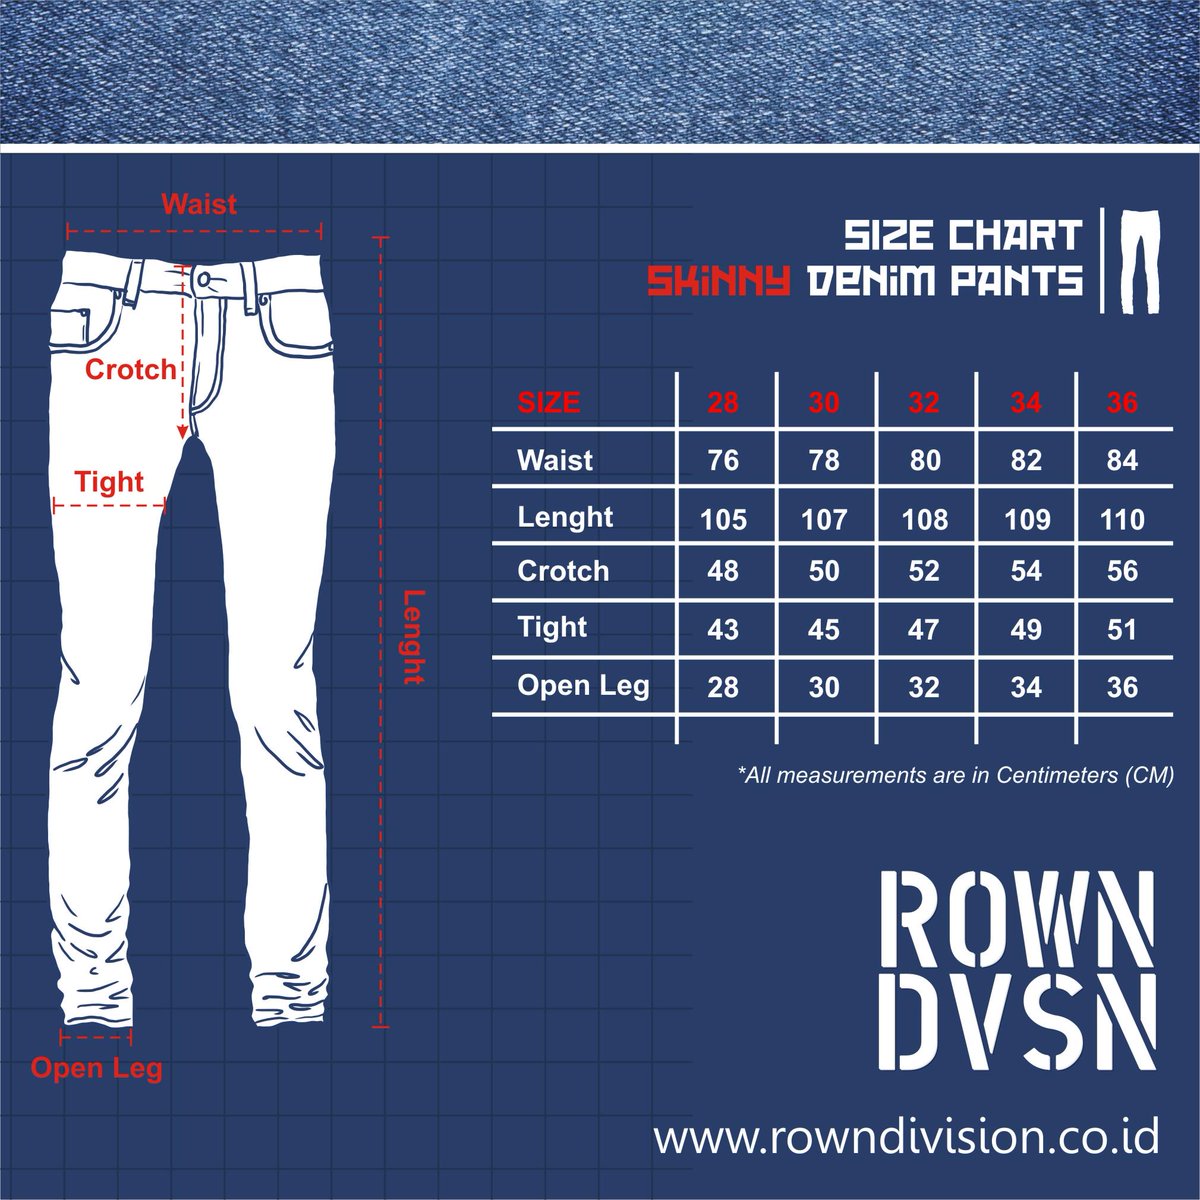 Как узнать размер женских джинсов: от снятия мерок до таблицы параметров разных стран